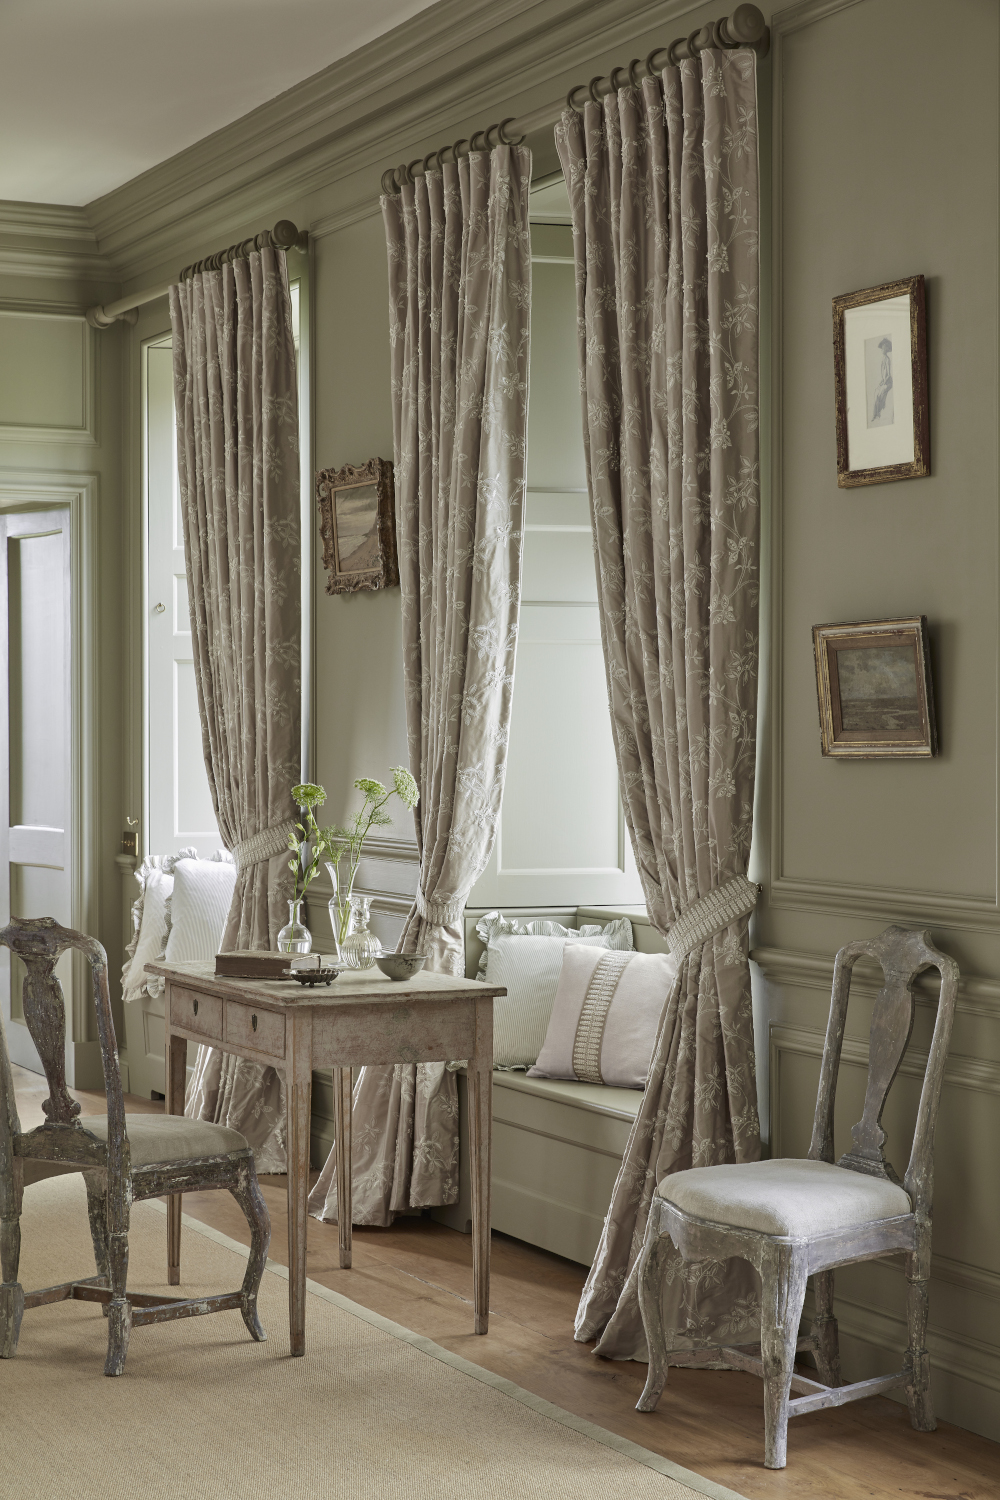 Image of floor length silk curtains, neutral colour scheme